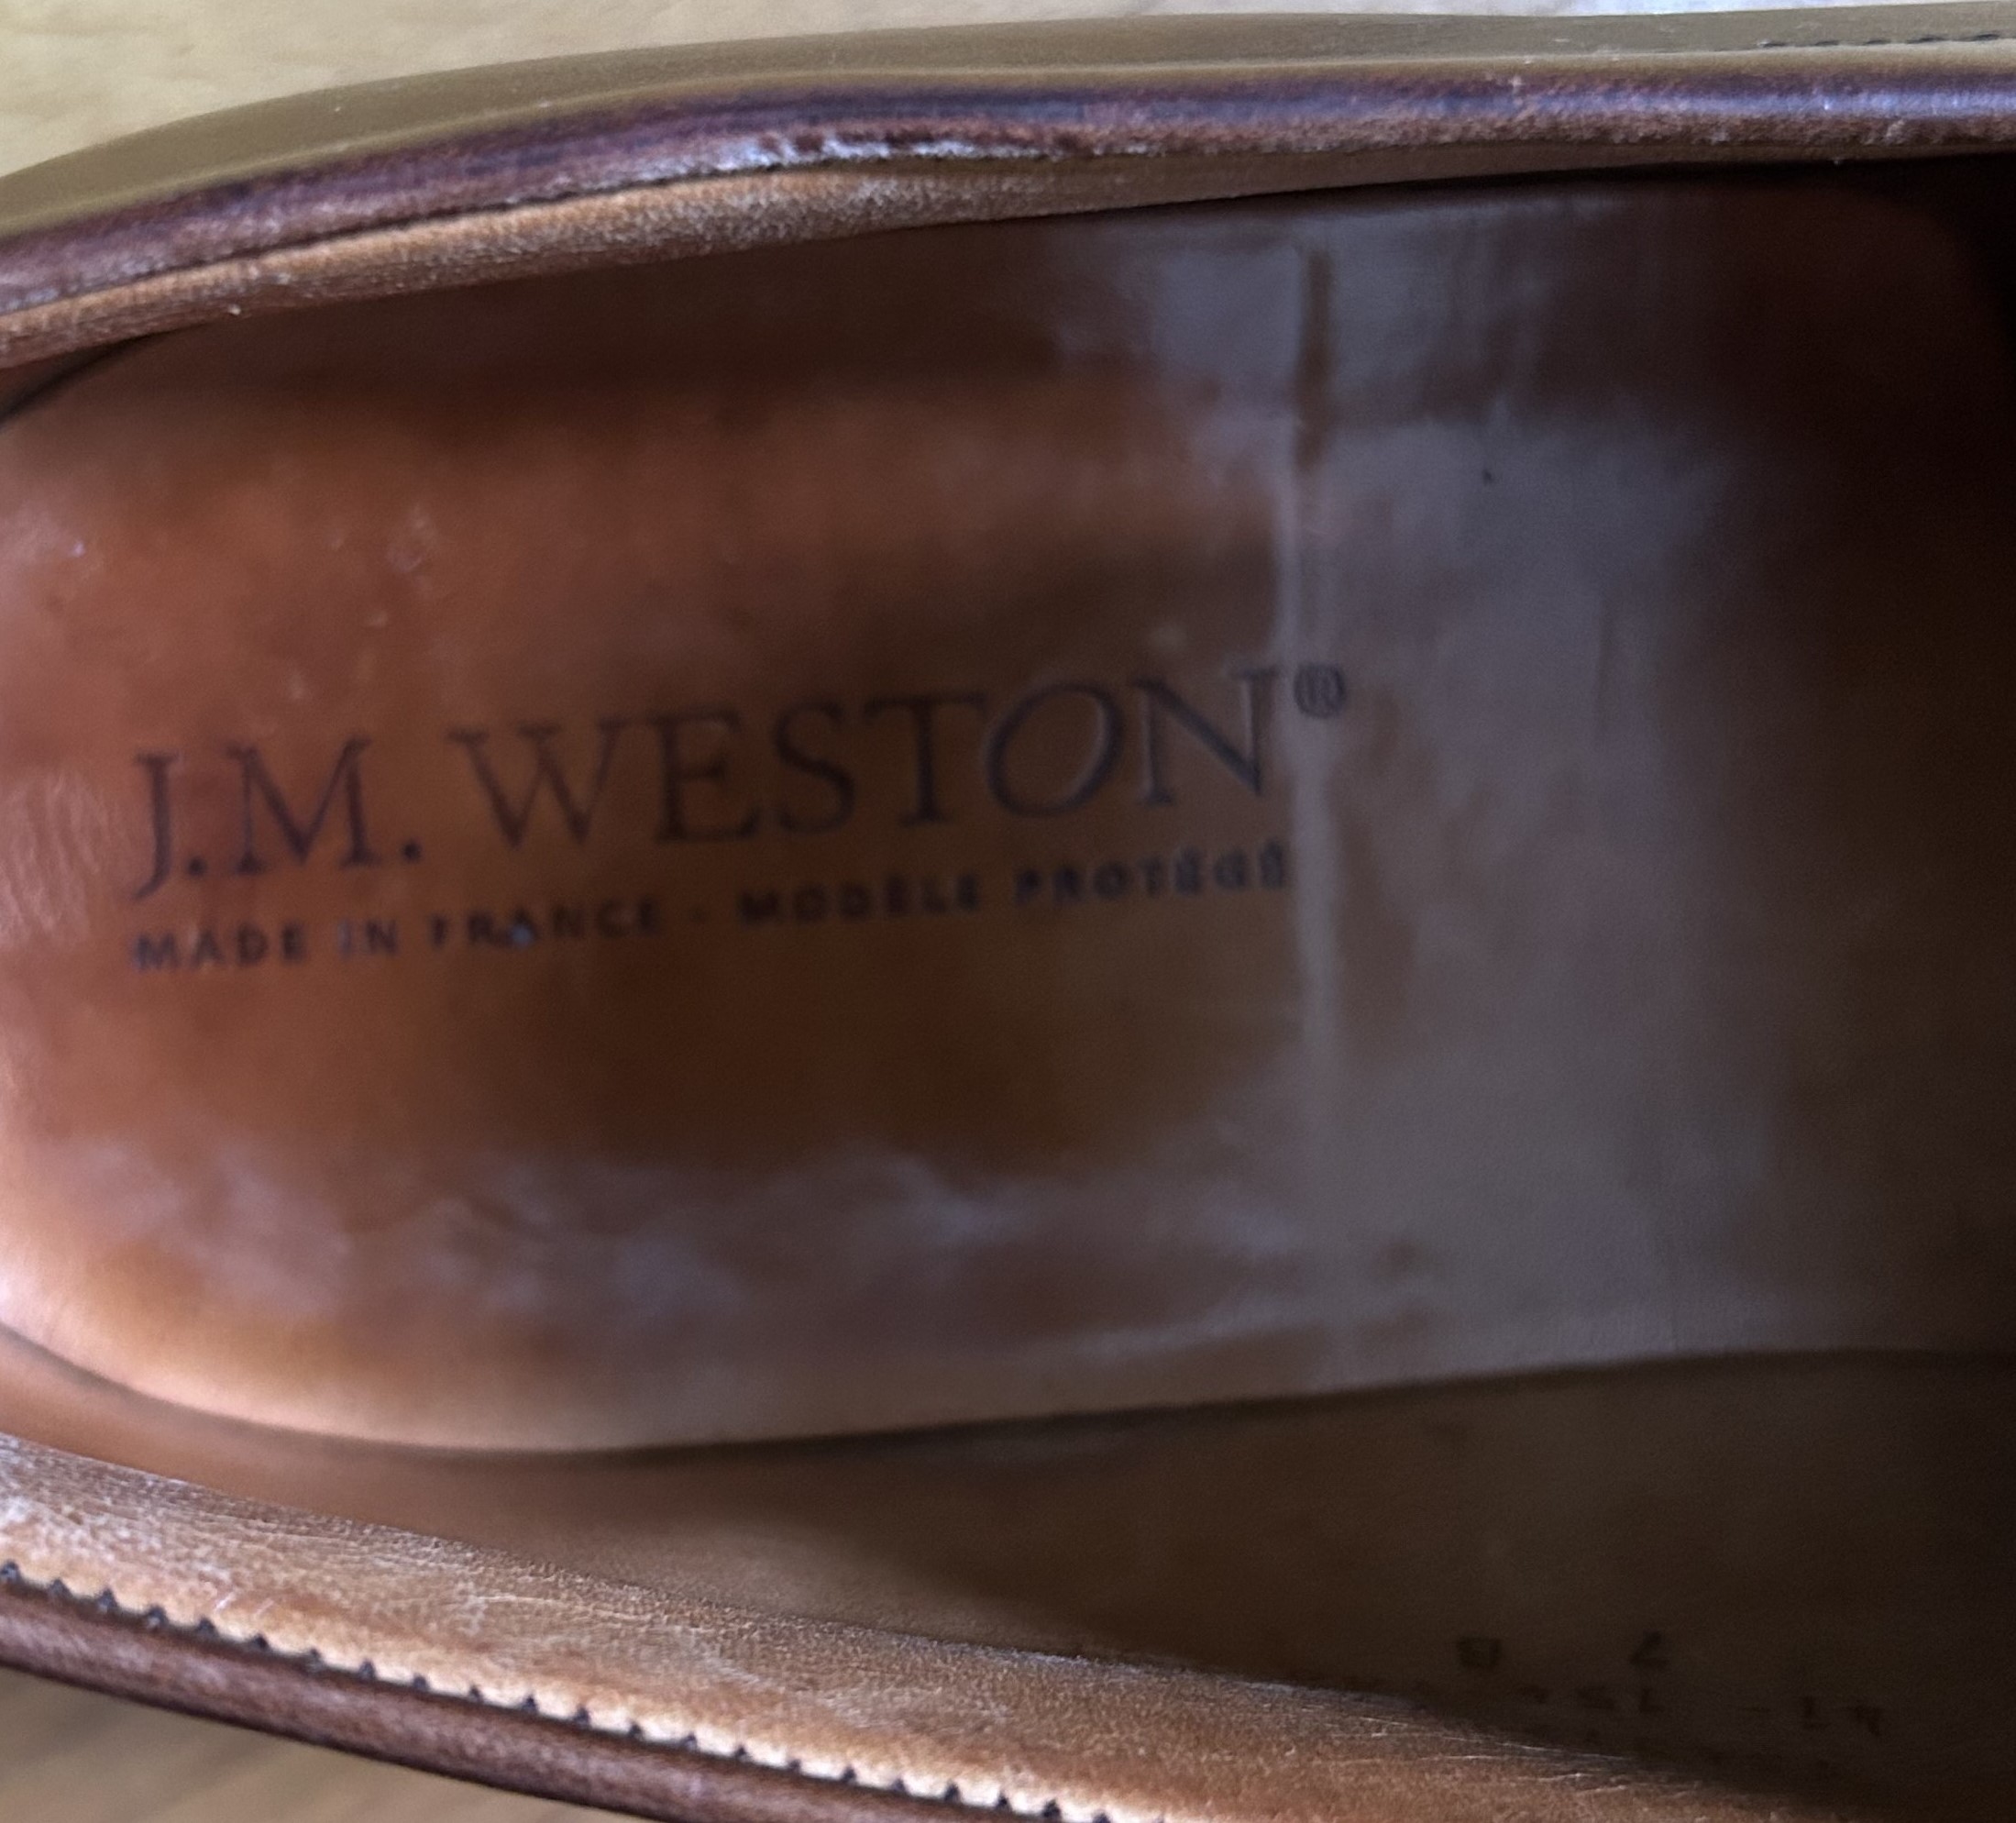 J.M. WESTONのロゴの推移と製造番号について調べてみた ...